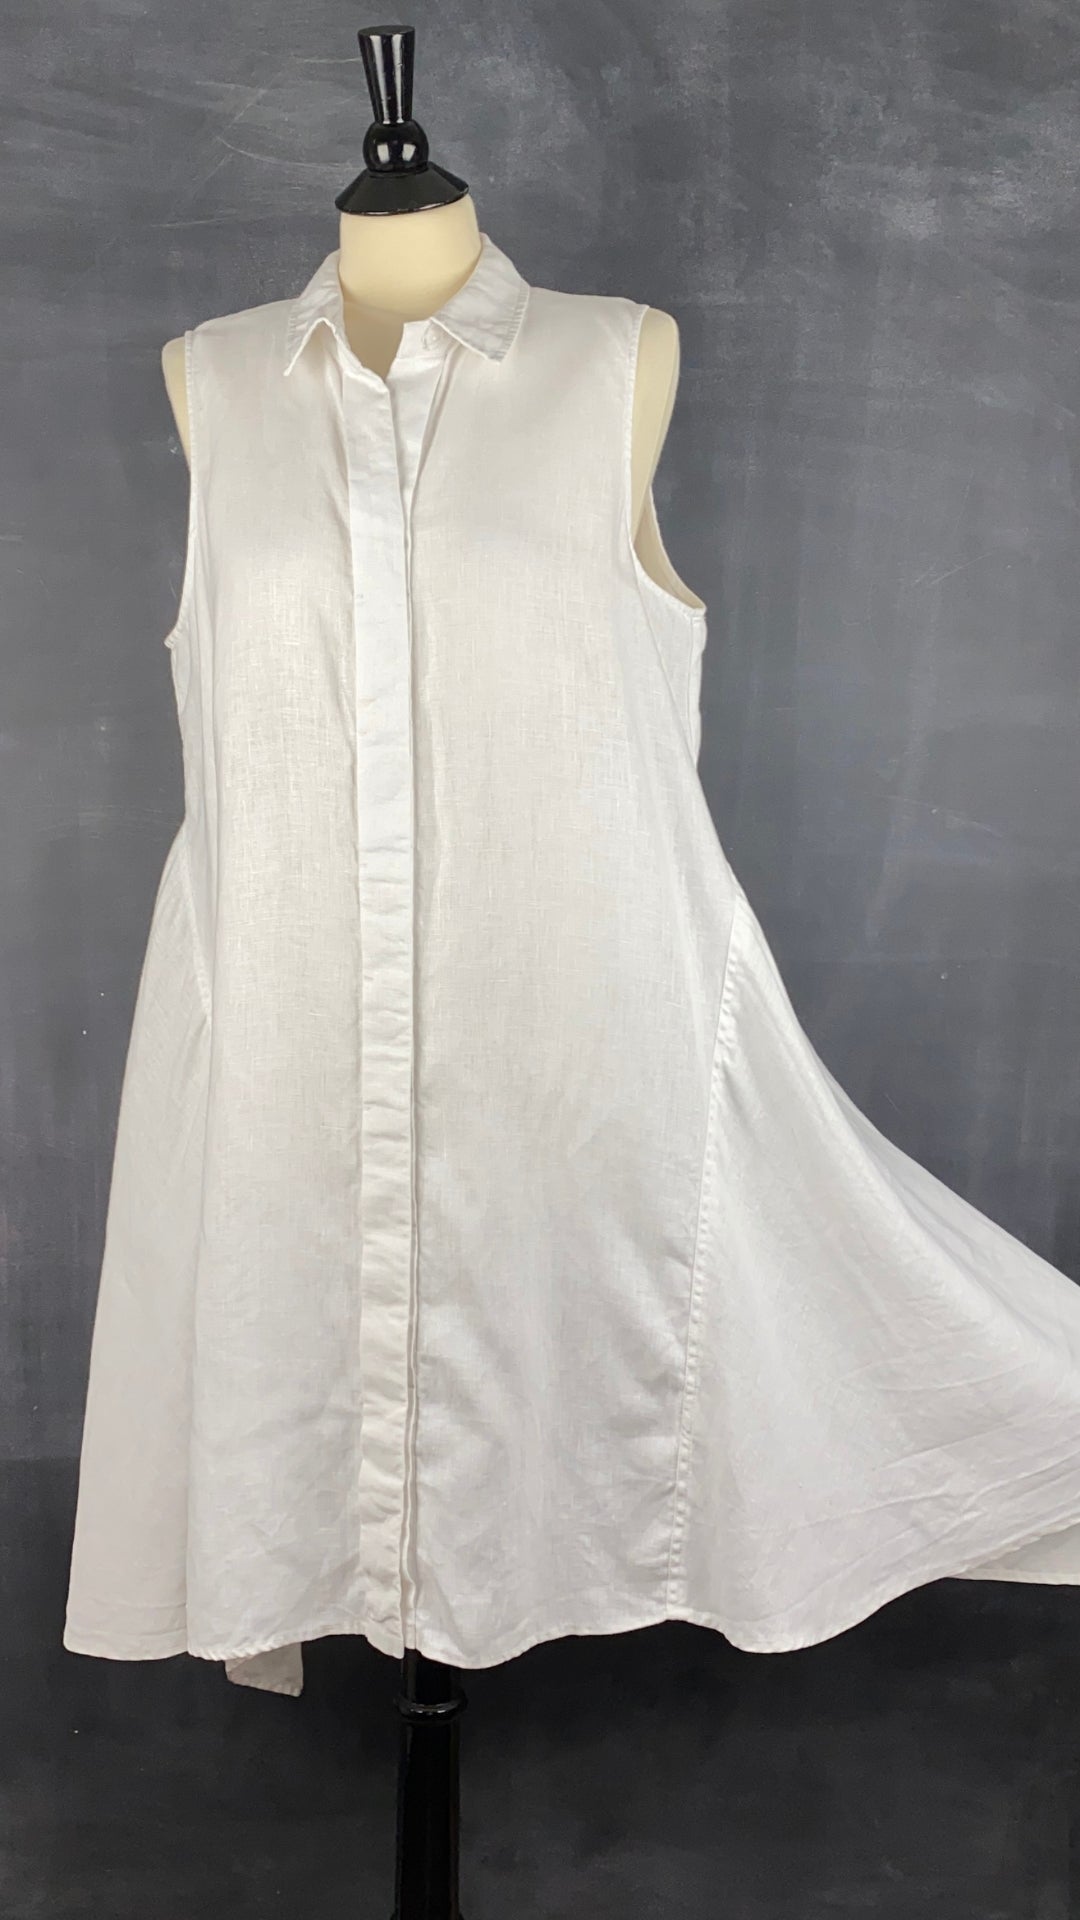 Robe boutonnée en lin asymétrique Athena Marie, taille large. Vue de face, la jupe étirée pour montrer l'ampleur.